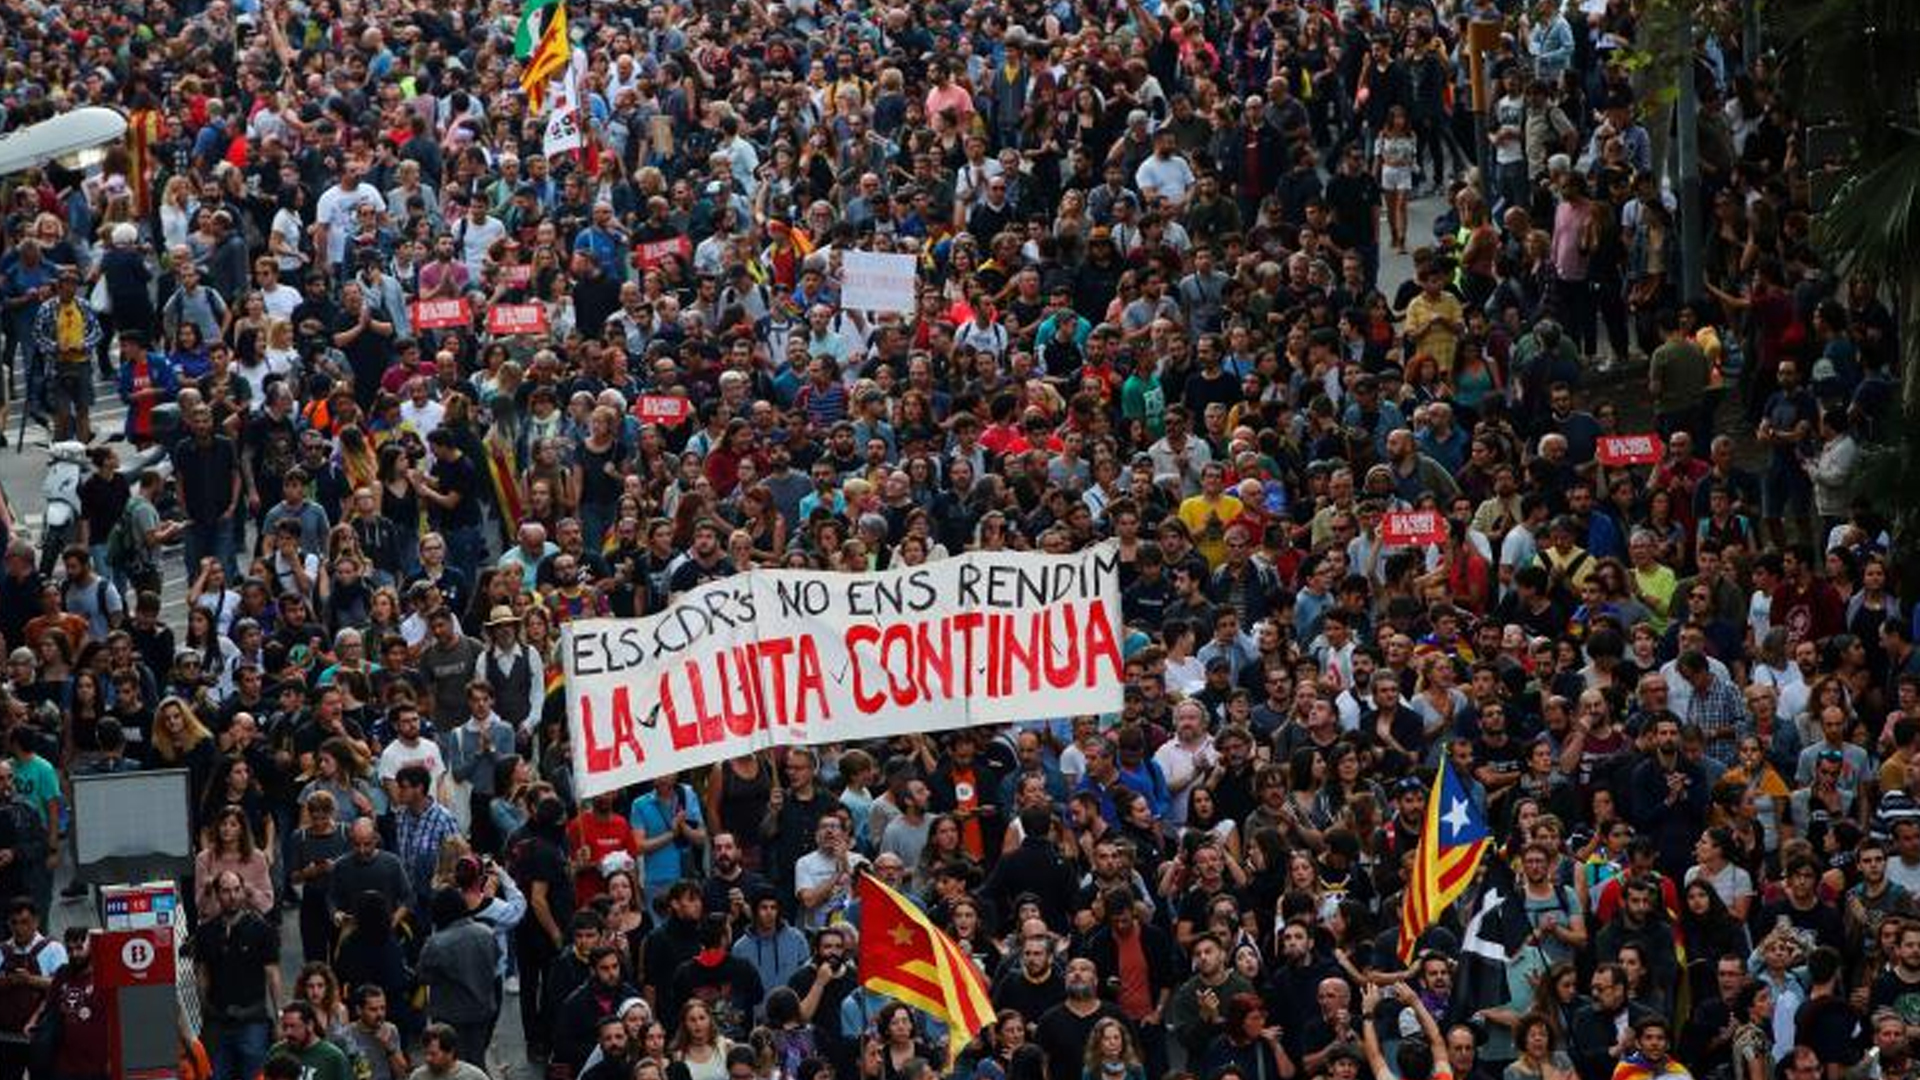 Temporada 1 Especial LaSexta Noticias: La manifestación de Plaça d'Urquinaona se desplaza al Parlament